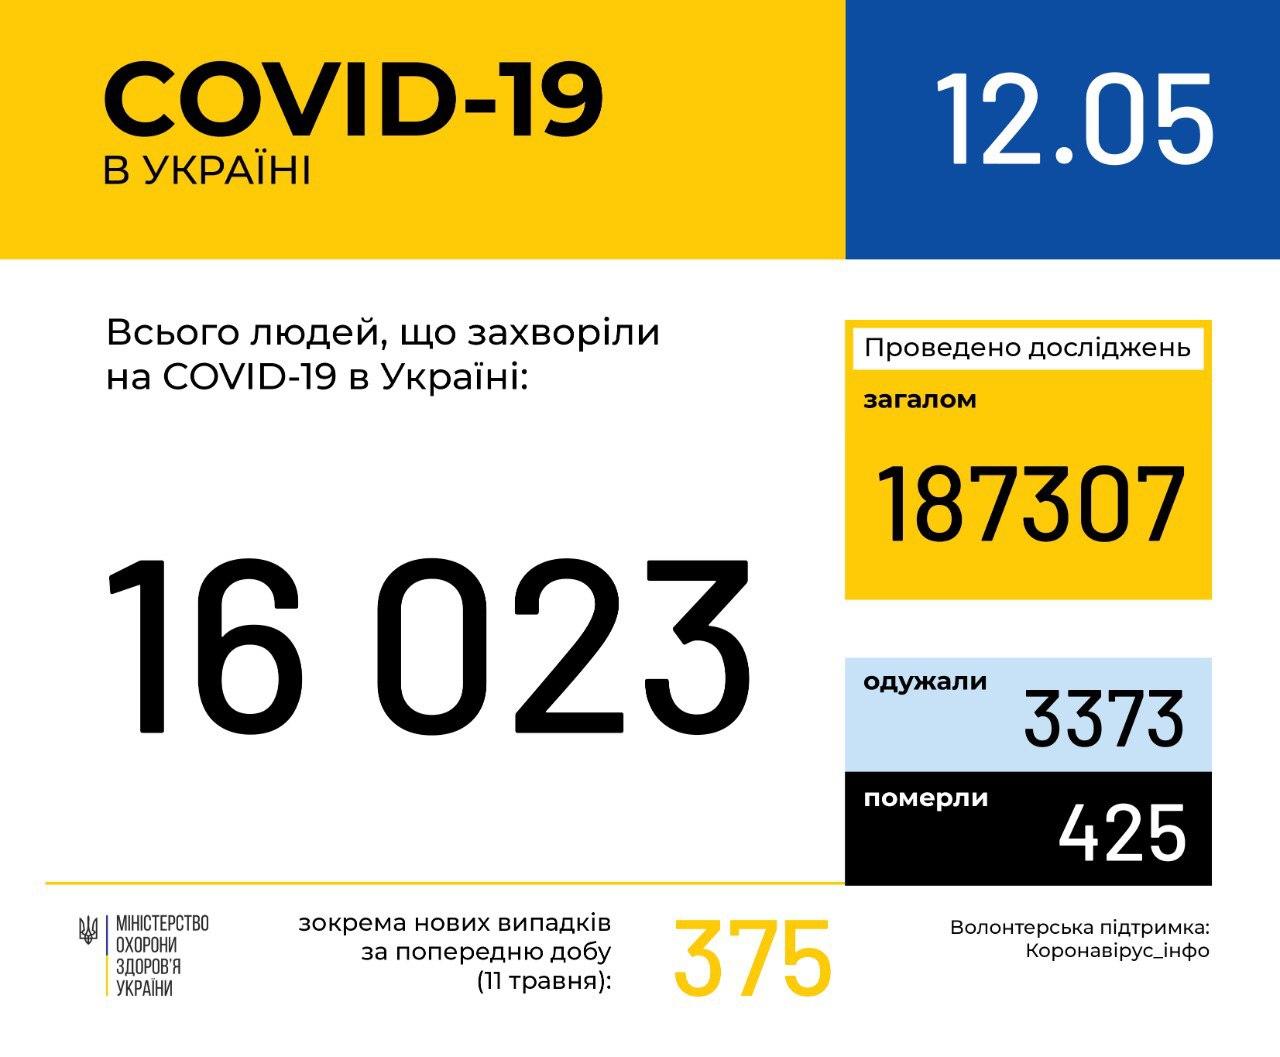 В Україні зафіксовано 16023 випадки коронавірусної хвороби COVID-19, - МОЗ